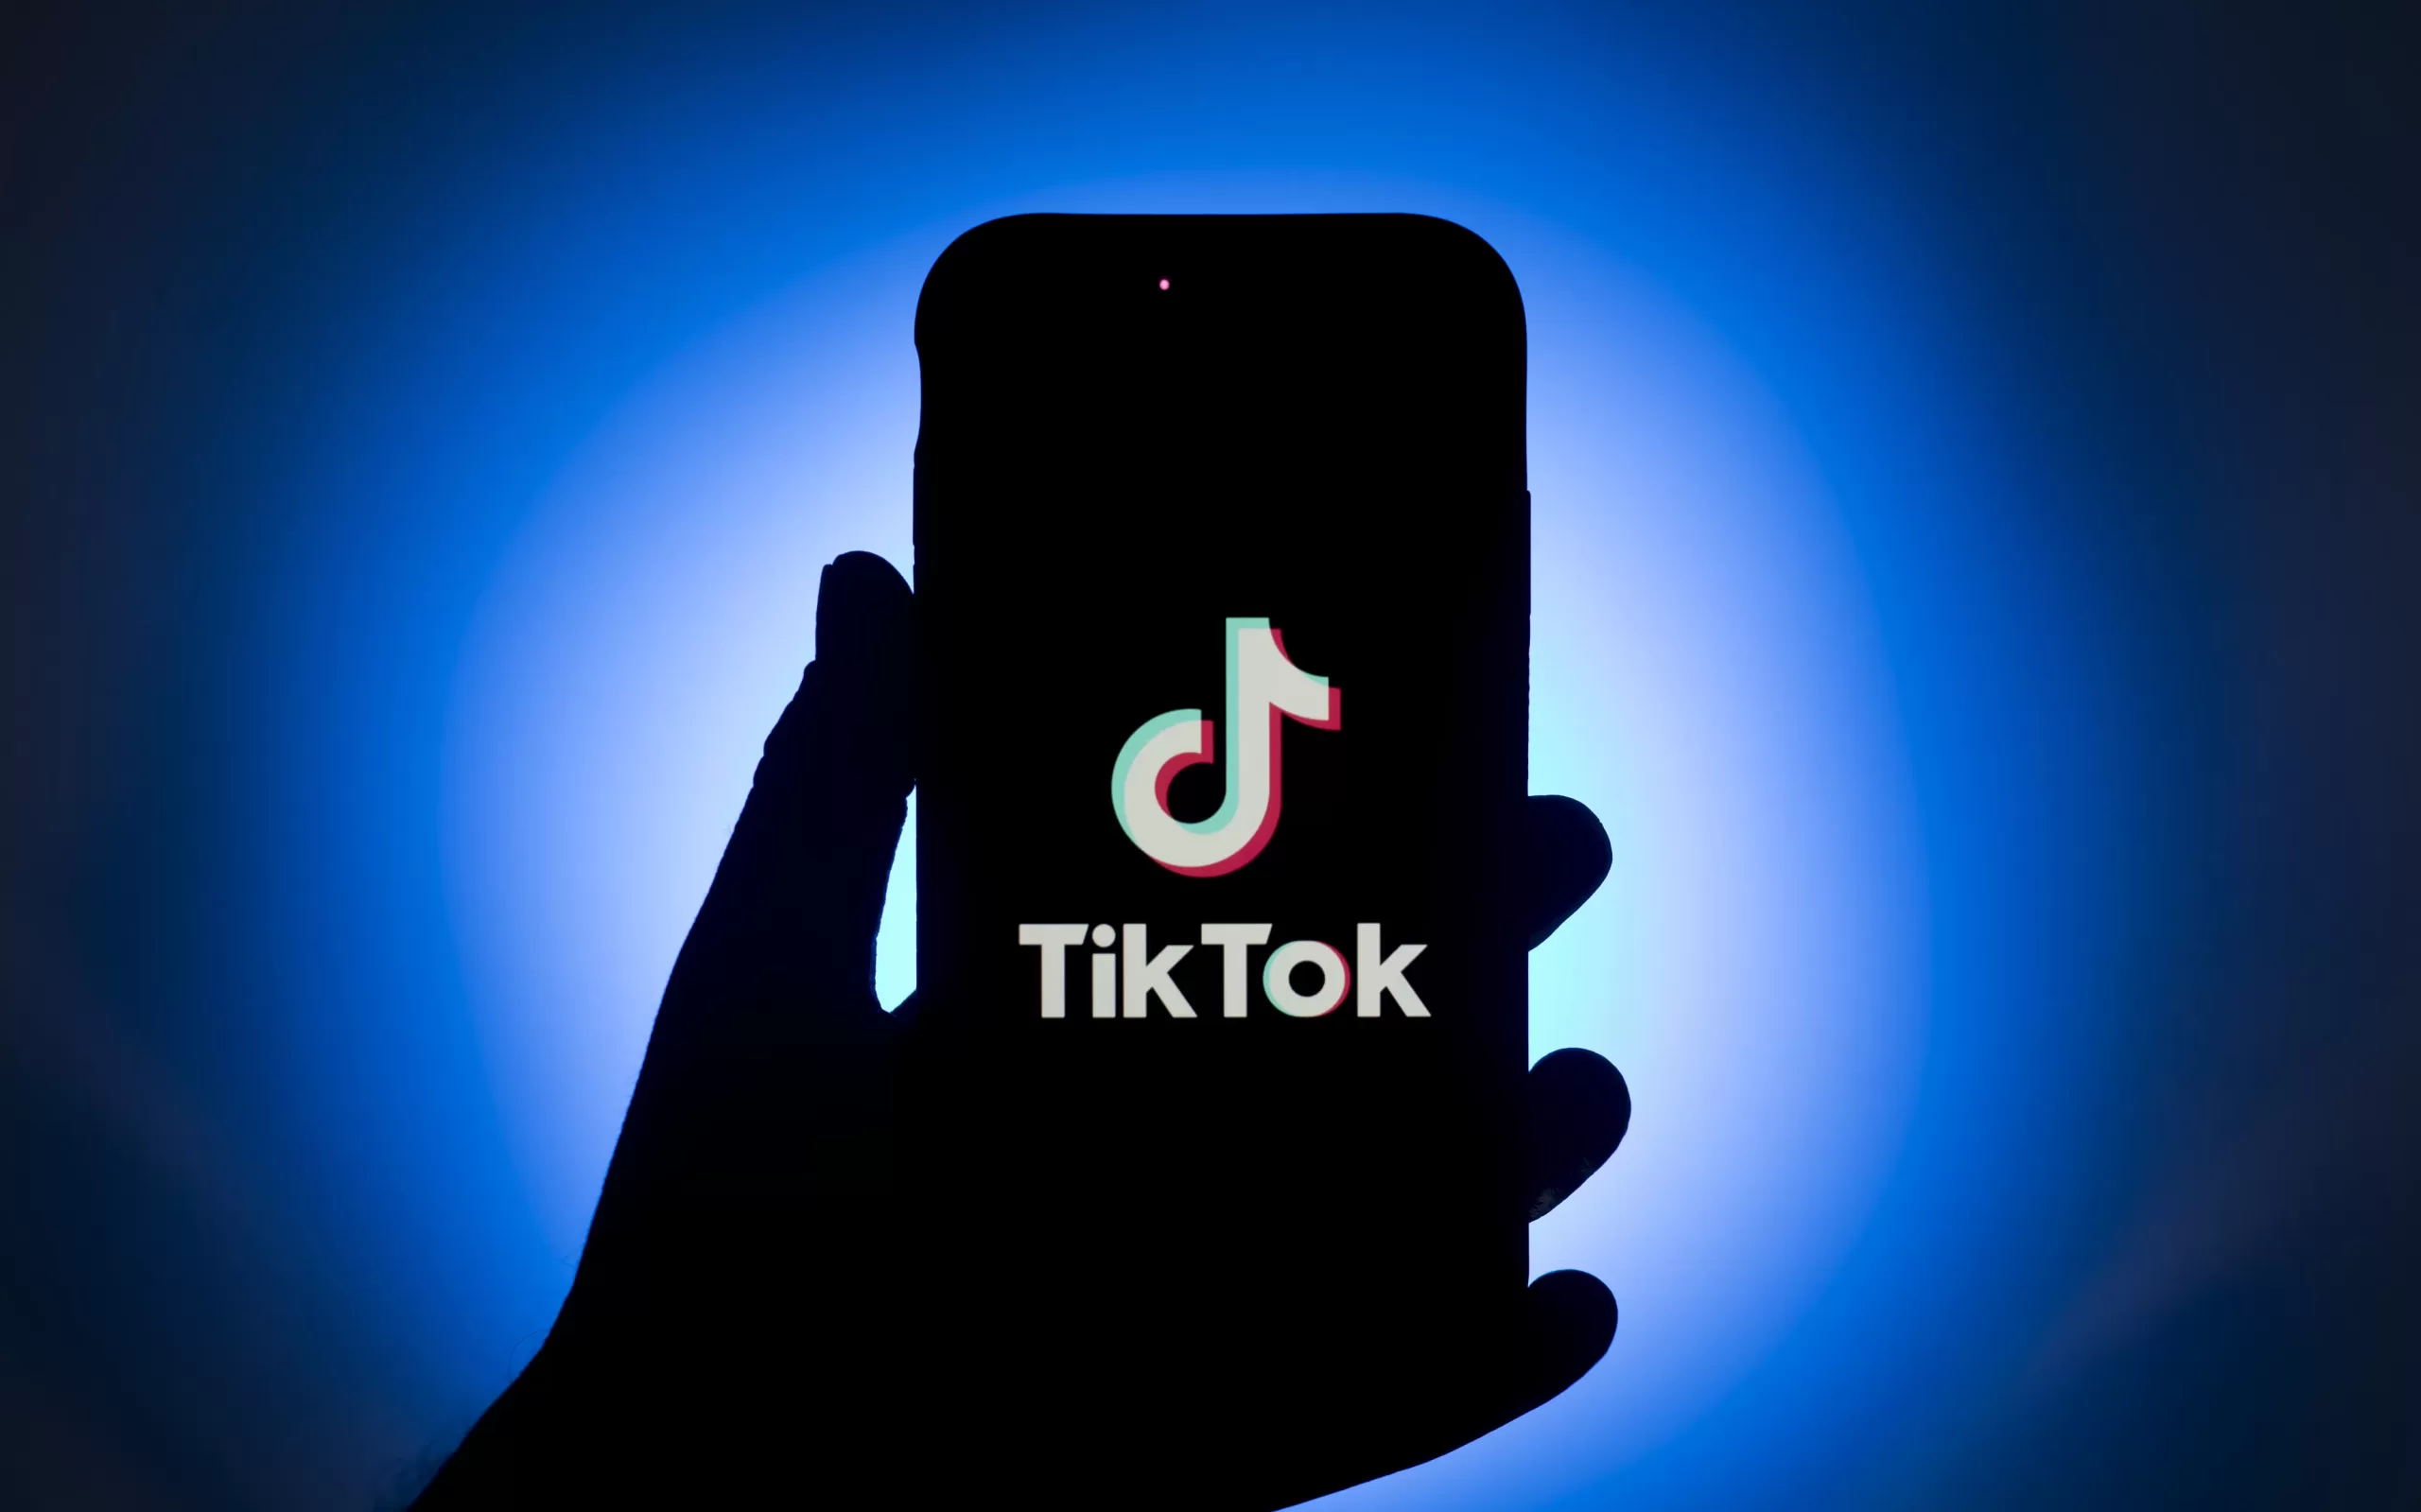 Tiktok foi processado pela UE devido uma possível violação a Diretiva de Serviços Digitais da União Europeia (DSA)